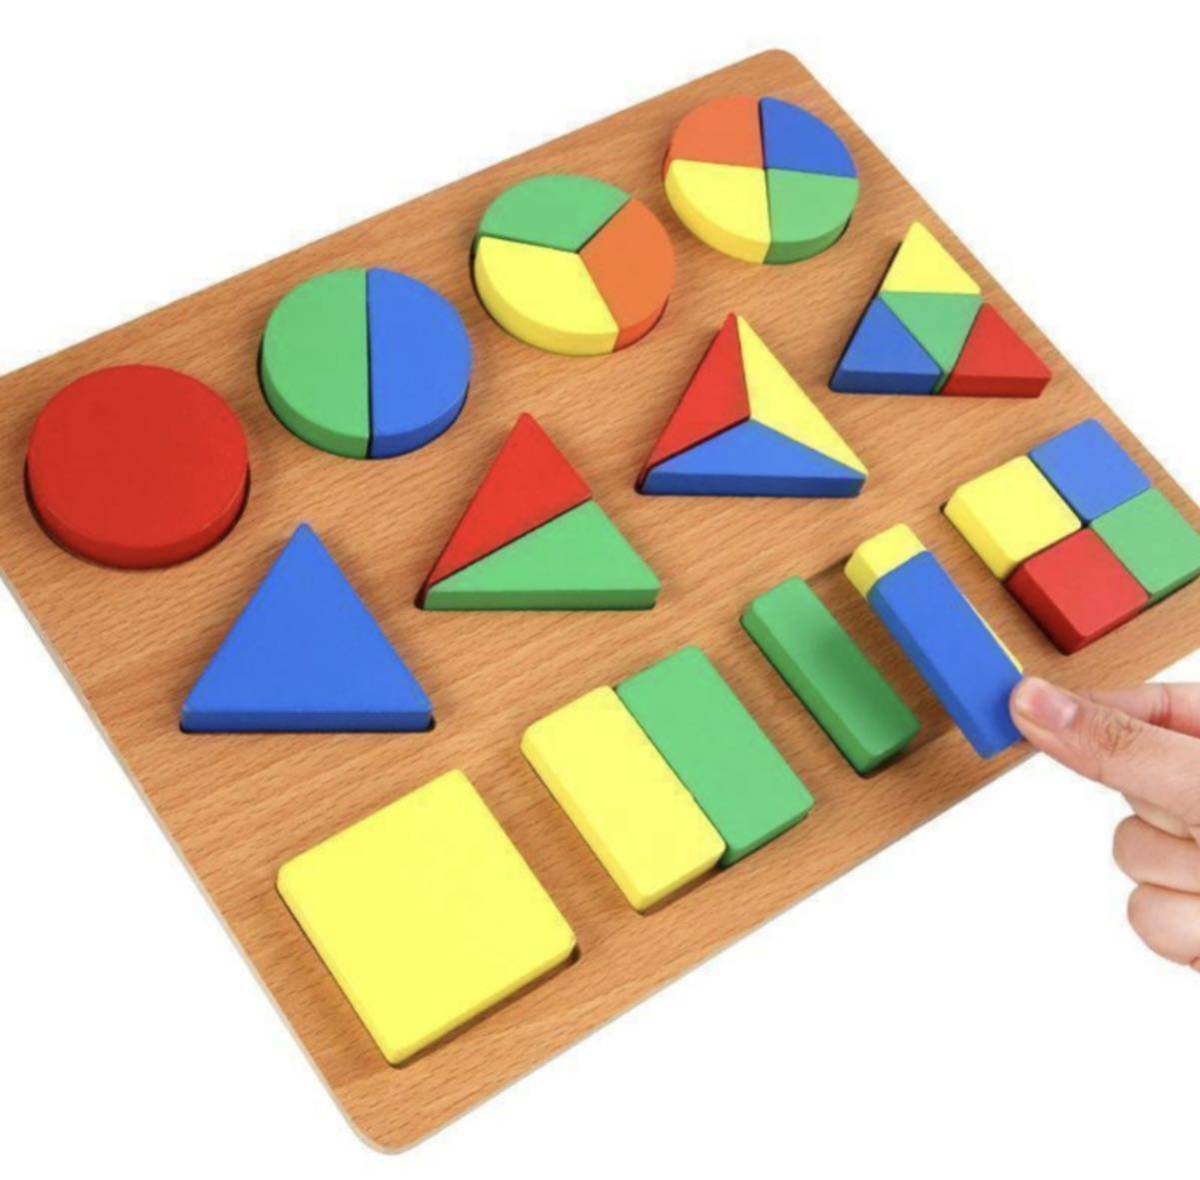 【色々組み合わせてみよう】木製パズル 知育玩具 モンテッソー パズル 型はめ